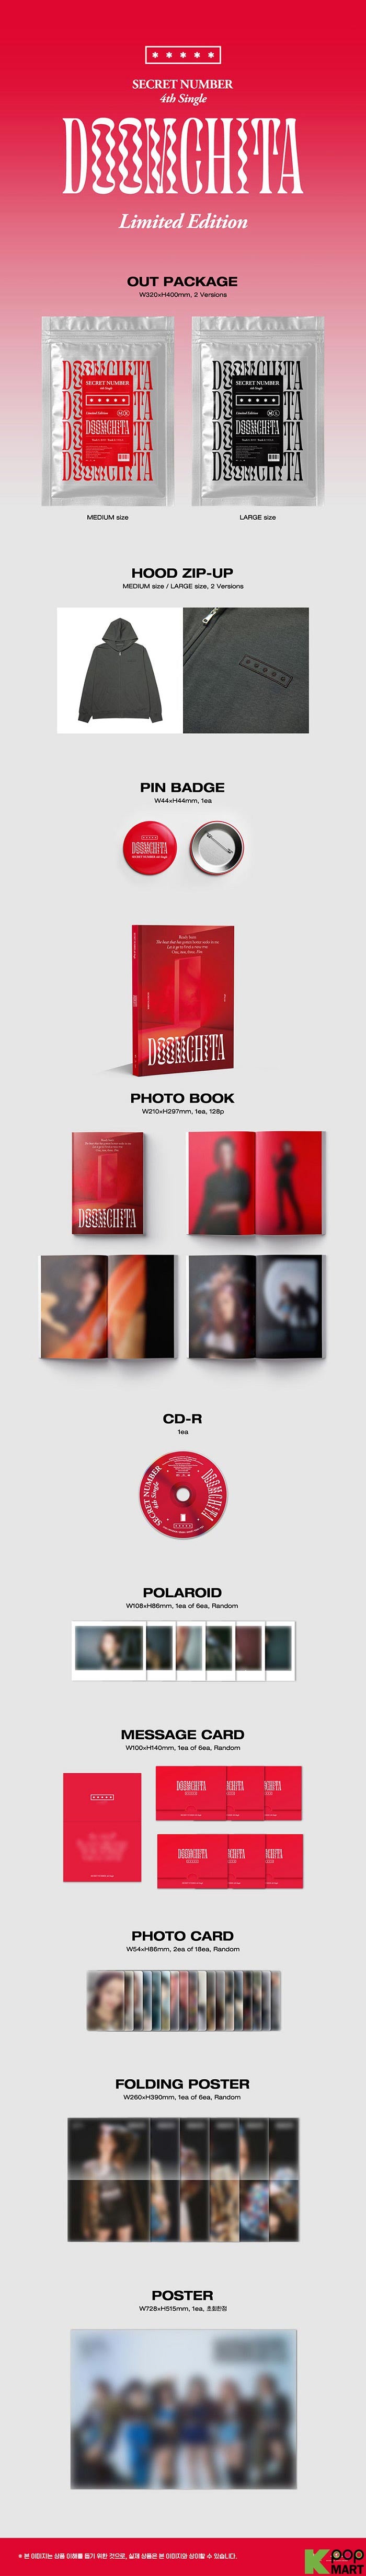 SECRET NUMBER - DOOMCHITA [4th Single Album - Limited Ver.]